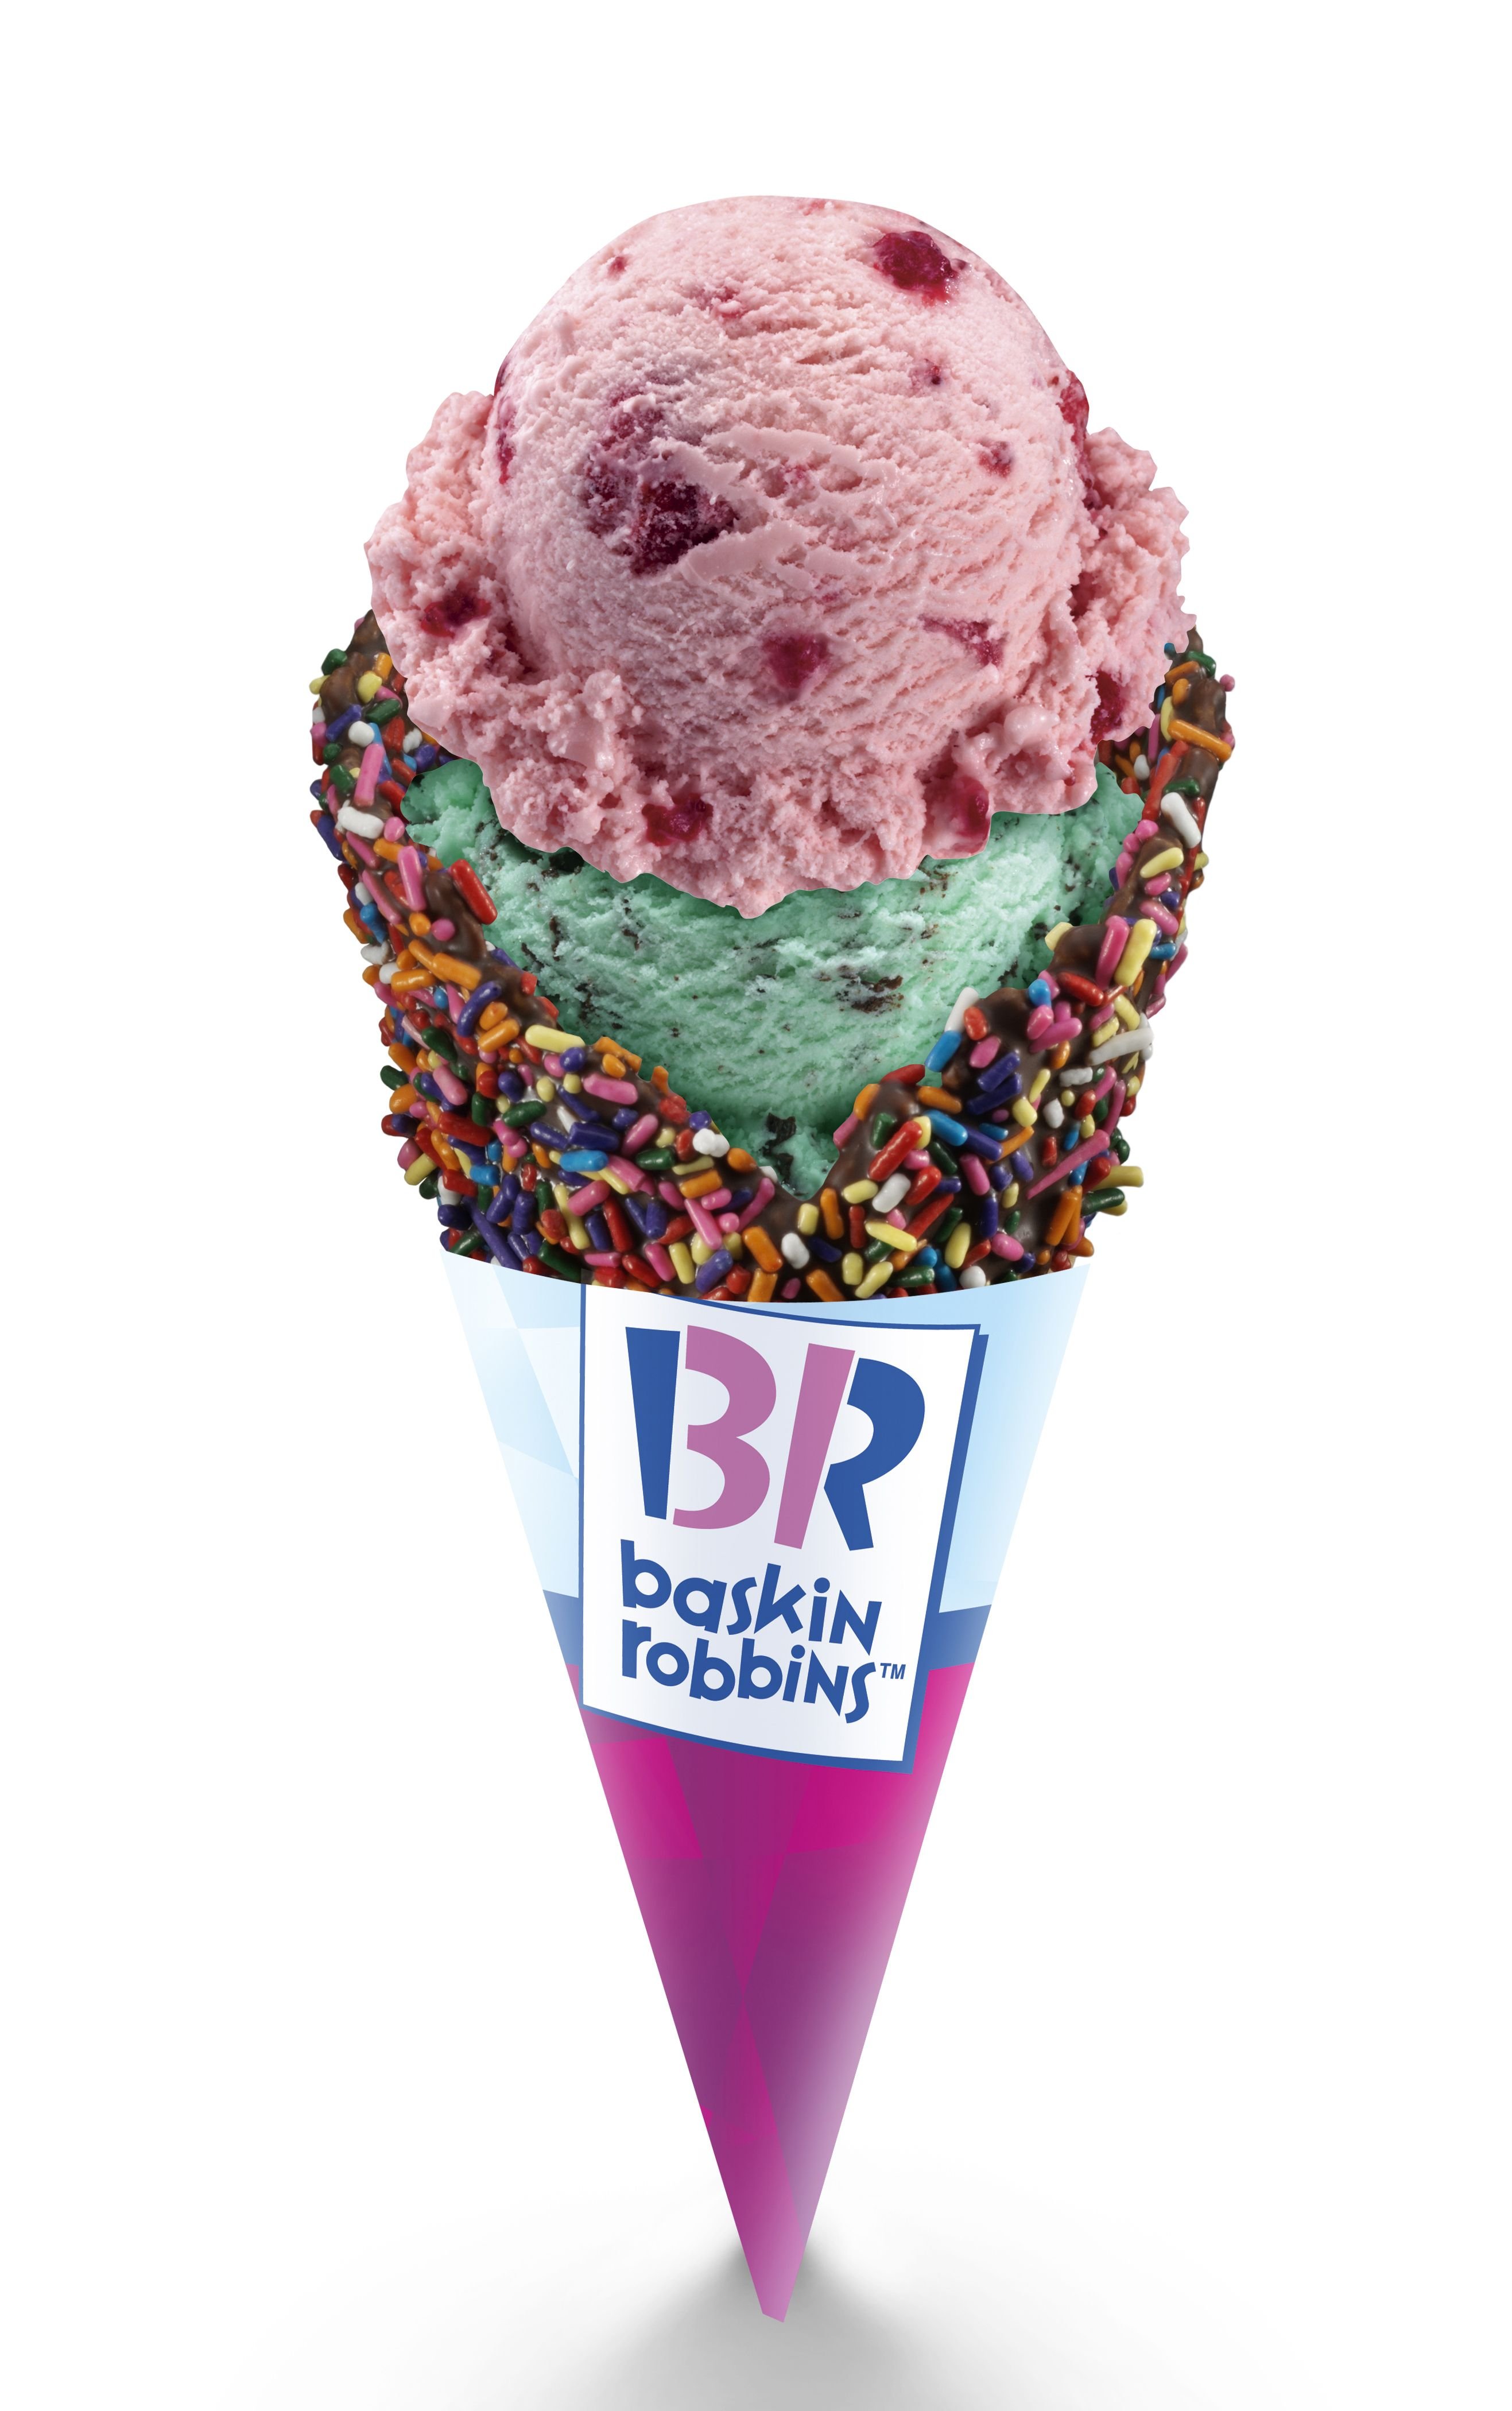 Хочу купить мороженое. Баскин Роббинс мороженое. Баскин Робинсон мороженое. Мороженое Баскинс Робинс. Мороженое Баскин Робертс.